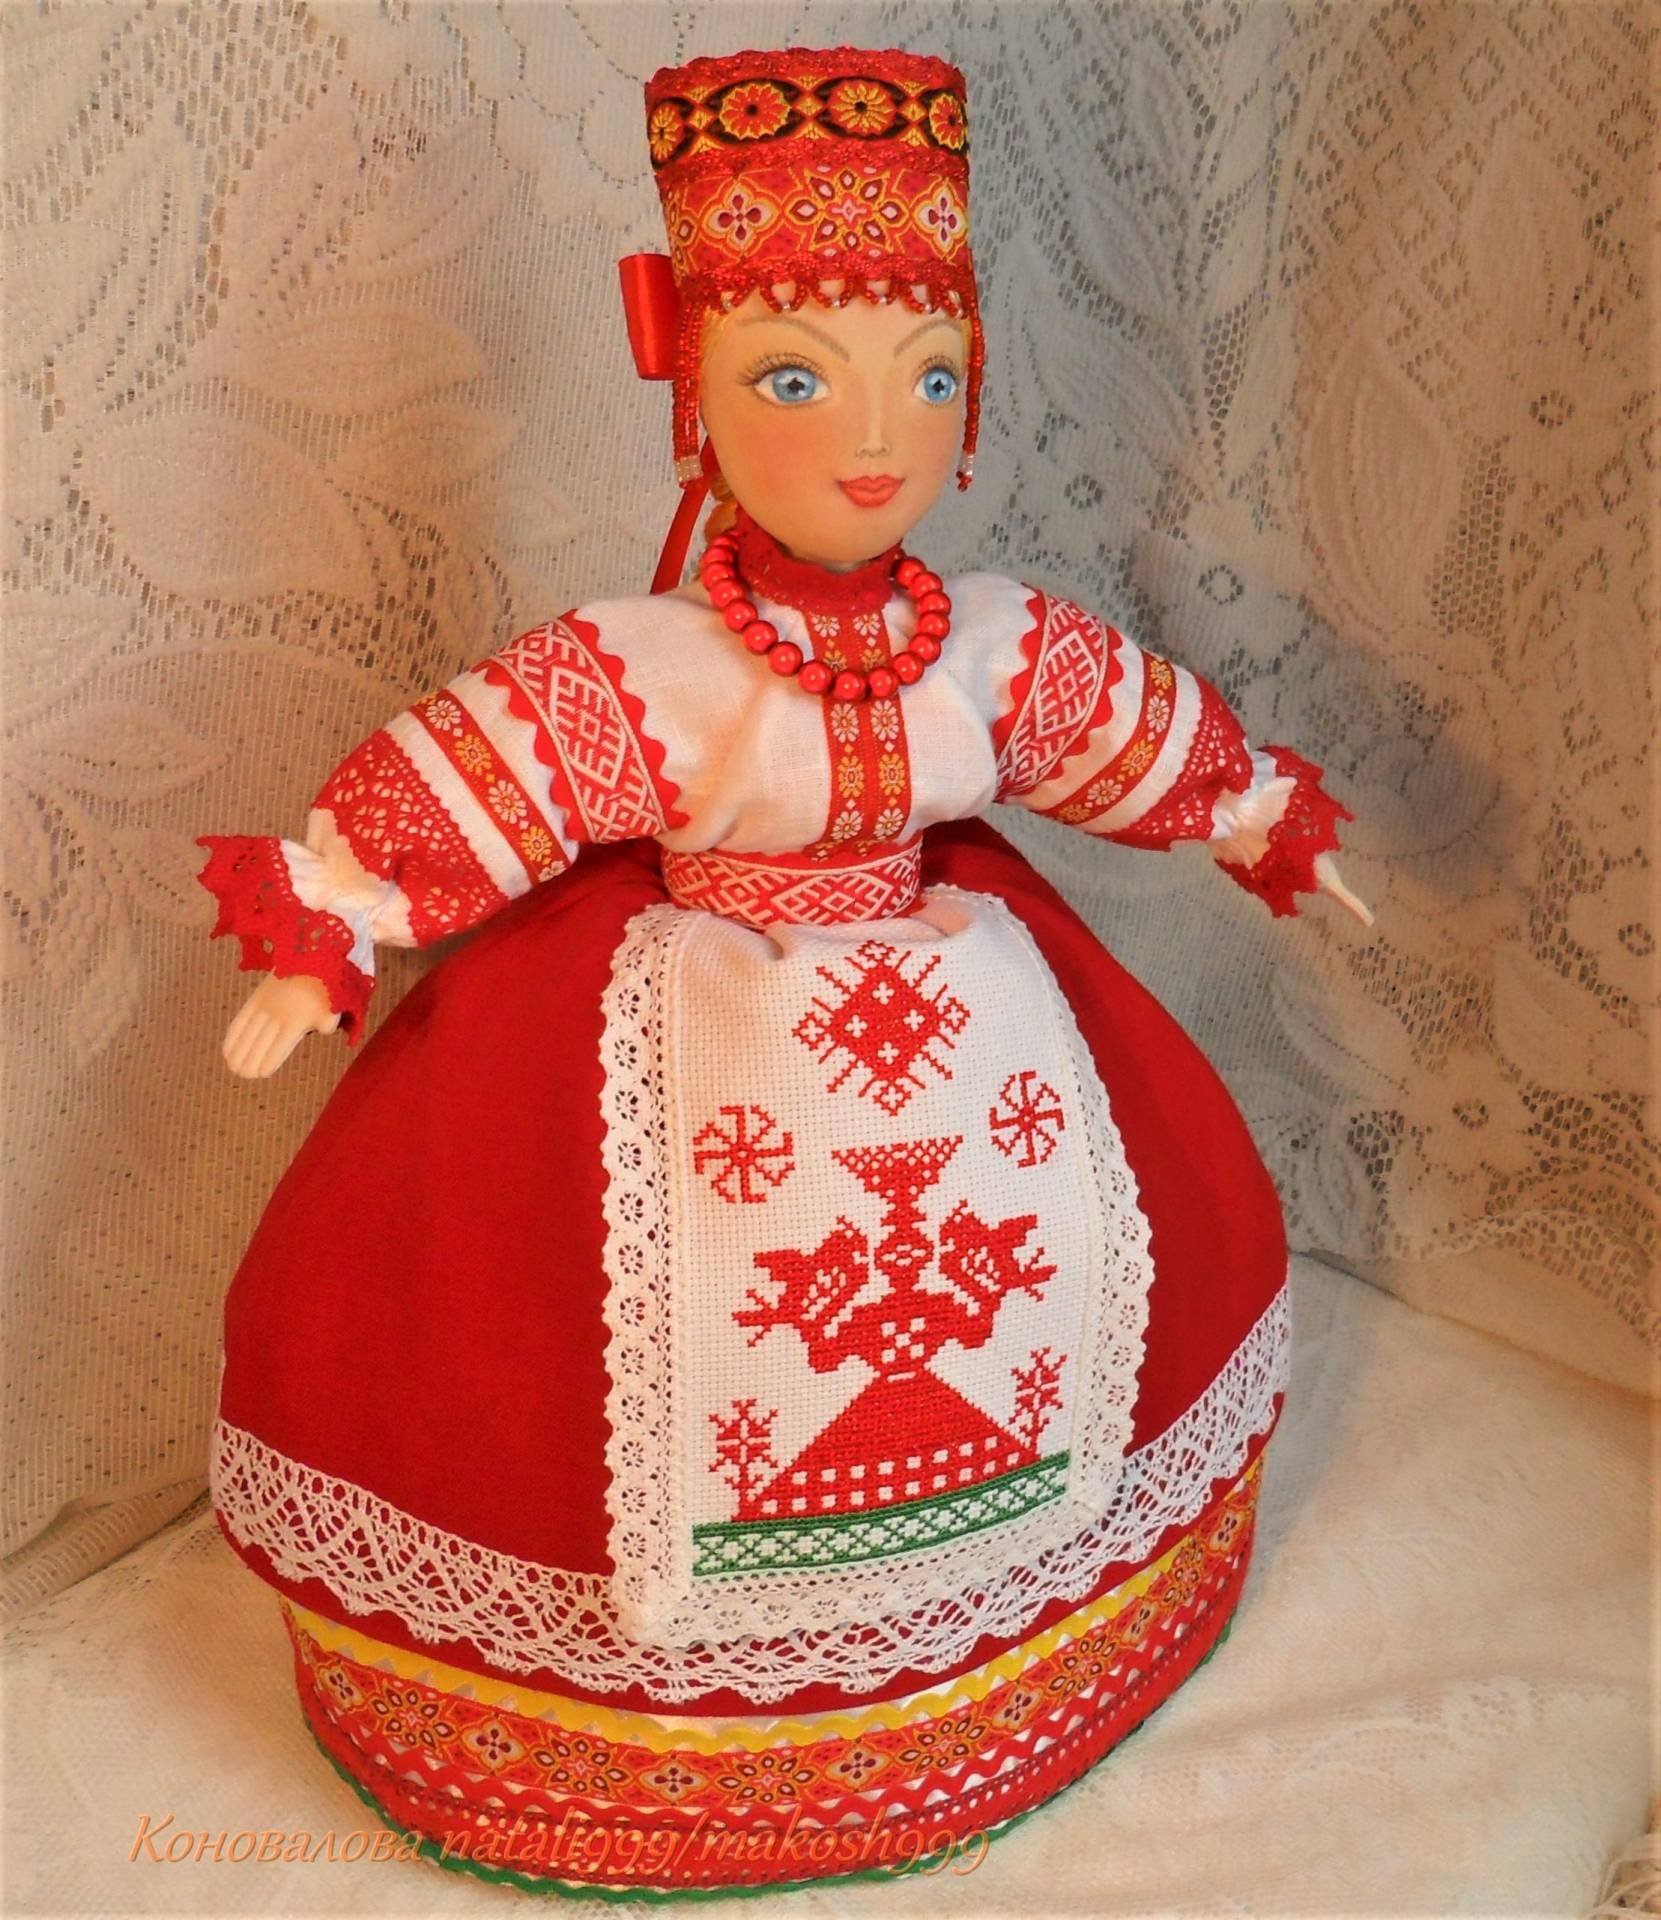 Русская национальная кукла. Русские куклы. Кукла в народном стиле. Куклы в русском стиле. Кукла в русском народном стиле.